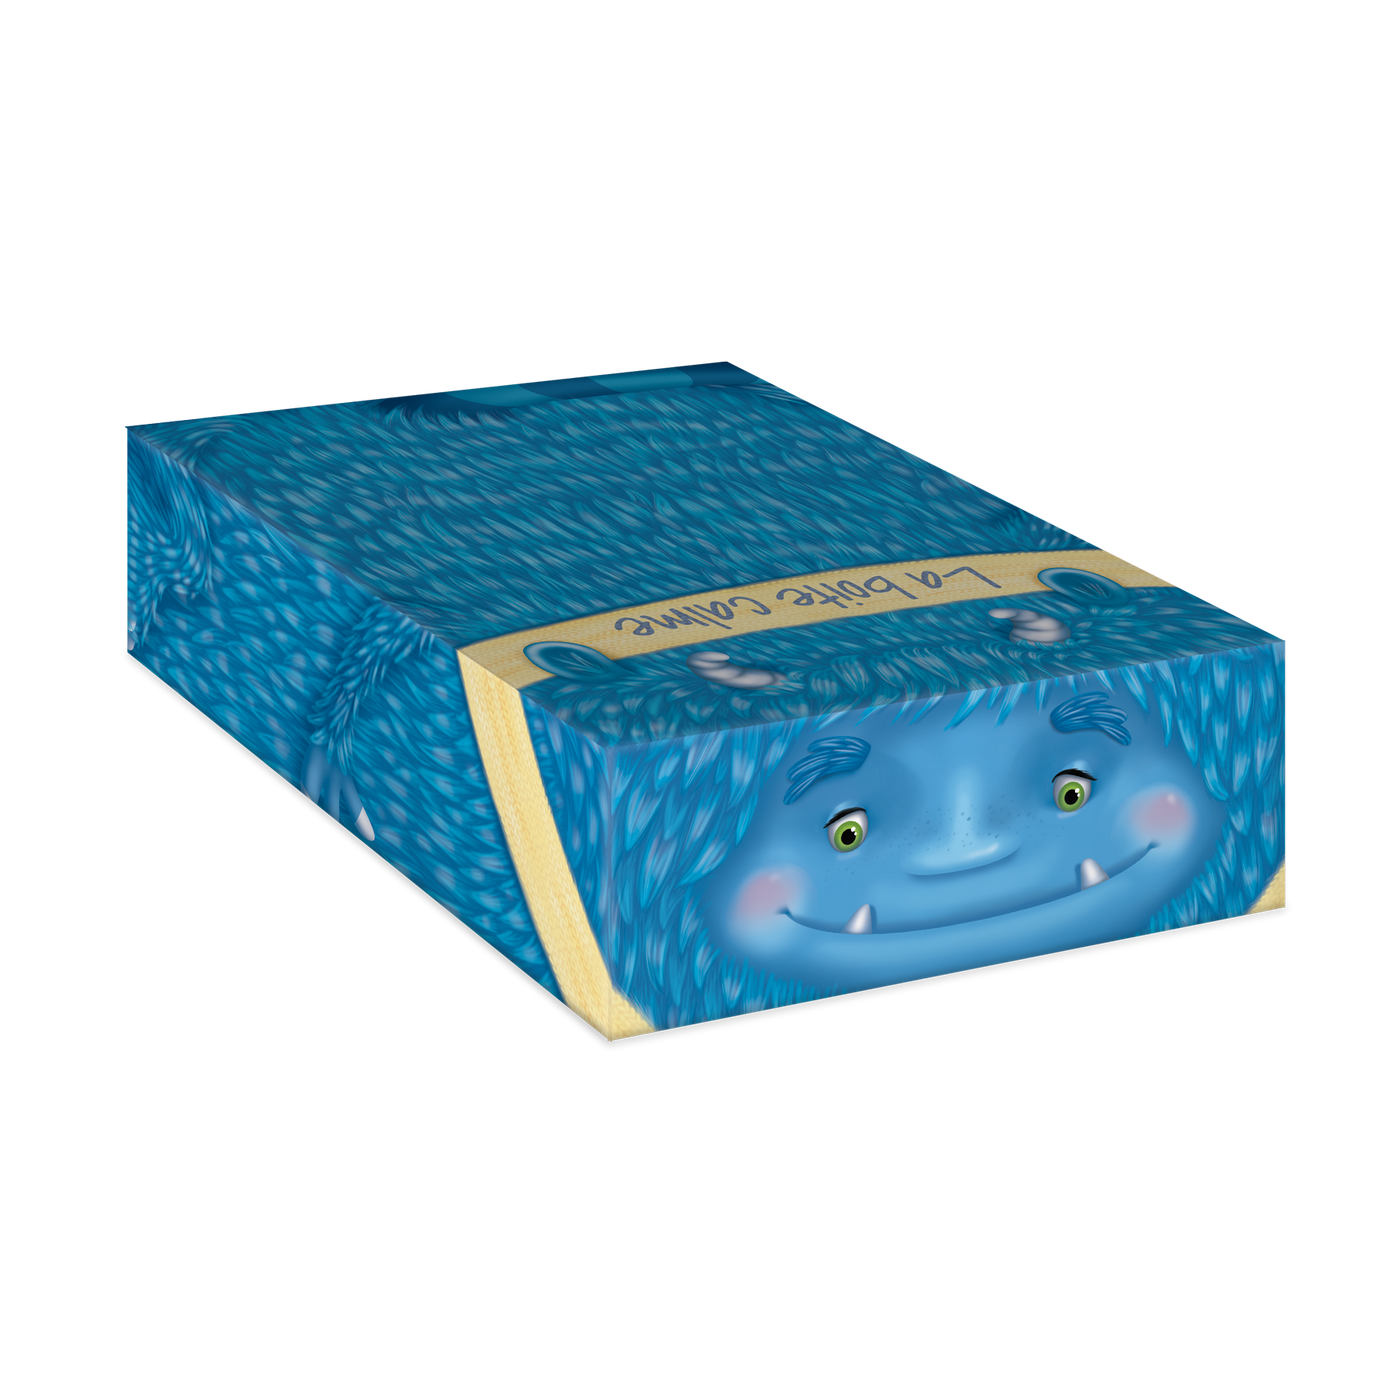 La boite calme - Haut de la boite : visage de Calmos le monstre (monstre bleu poilu avec foulard jaune)